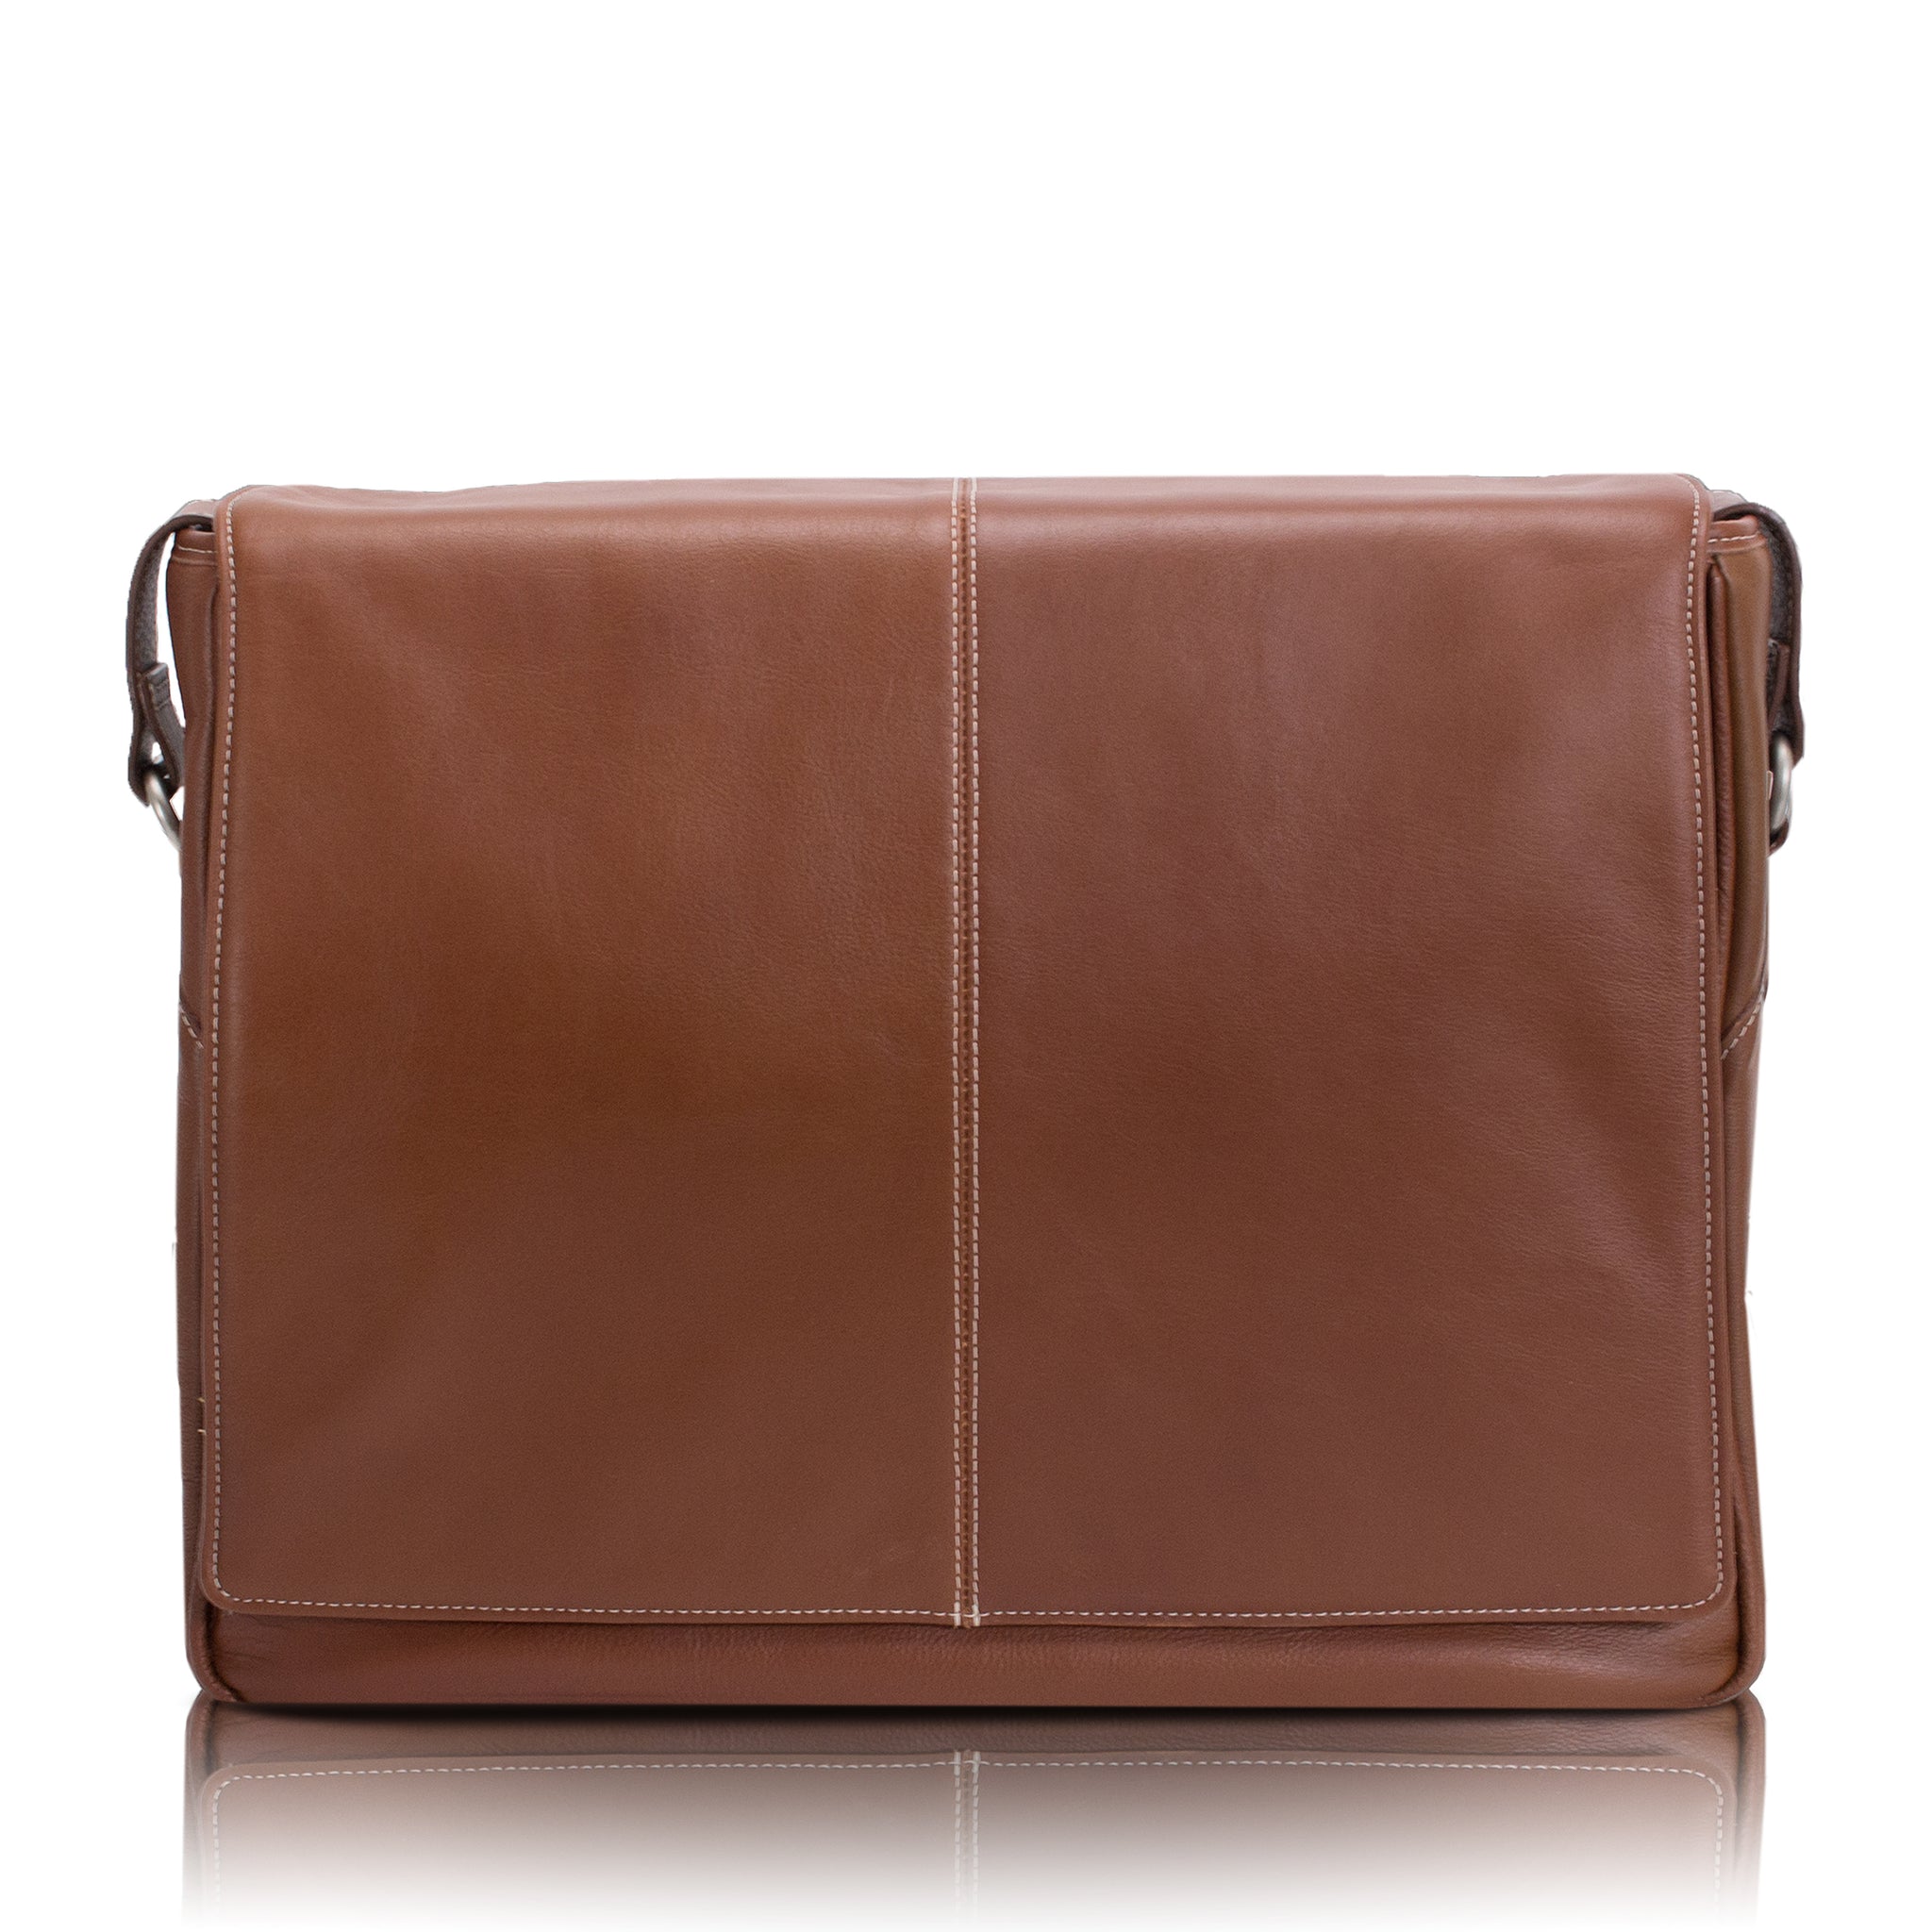 Francesco Biasia Metal Shoulder Bags | Mercari